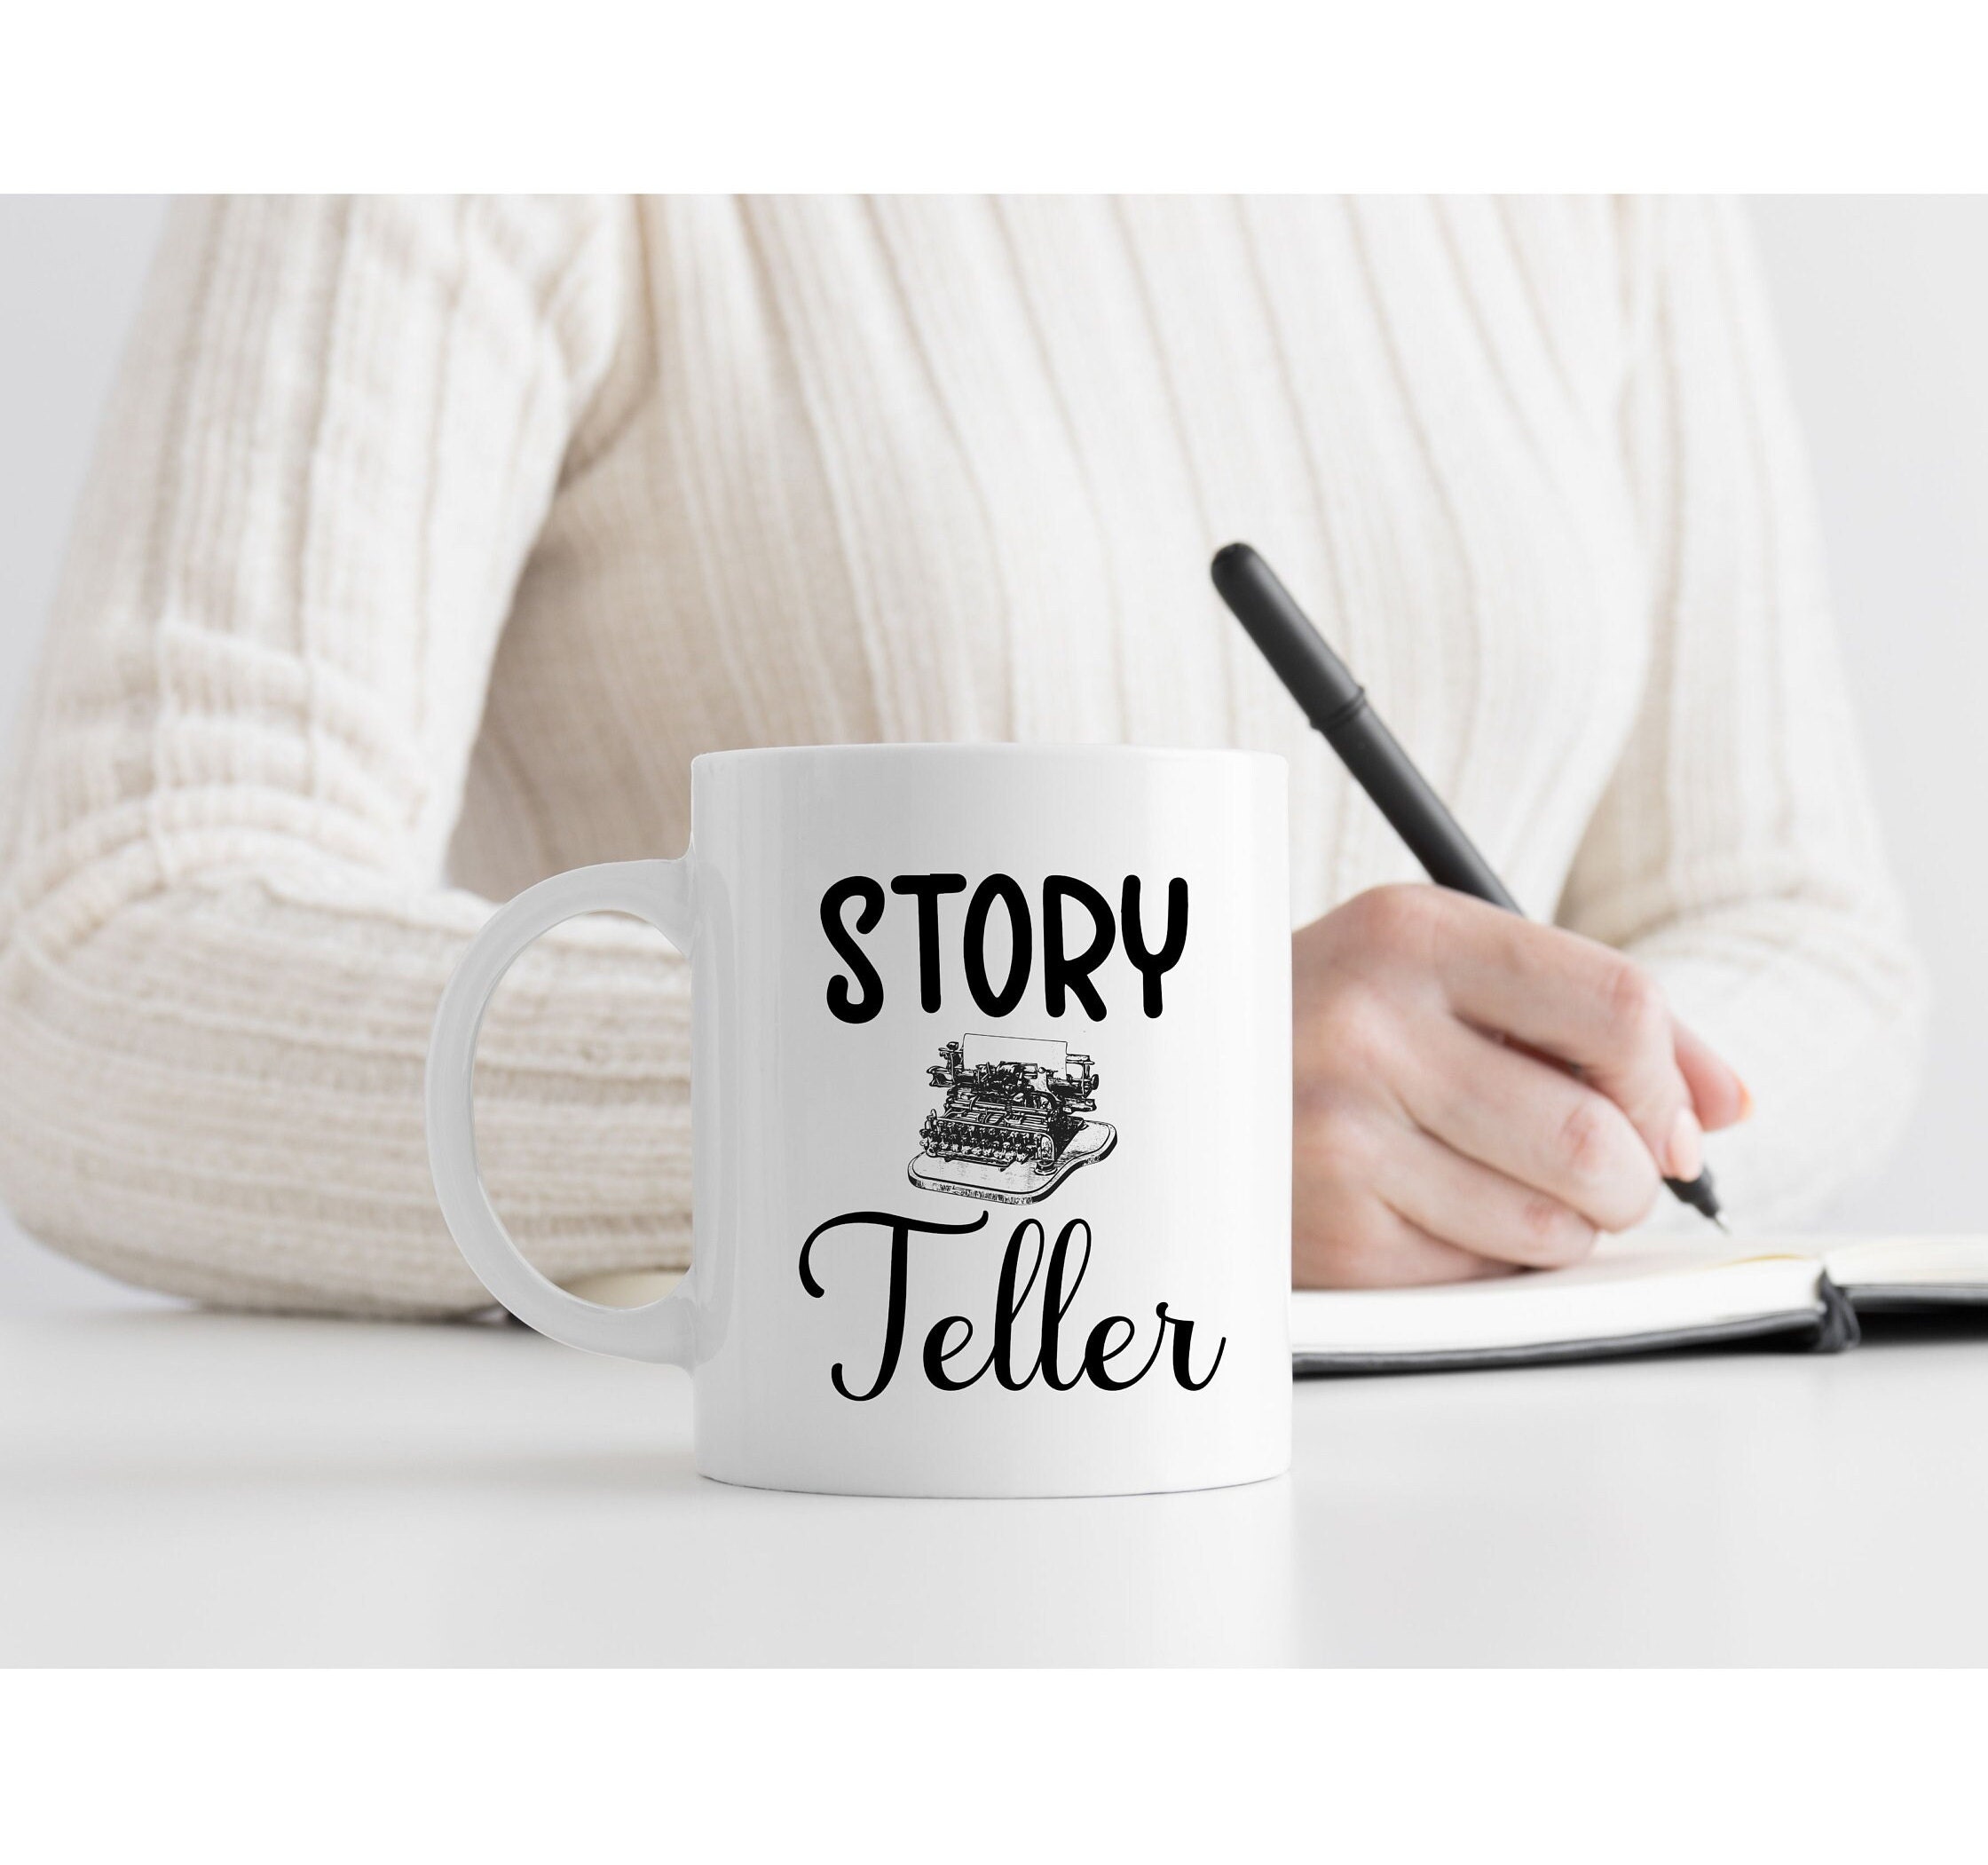 Published Author Mug, Future Writer Coffee Mug, Gift for New Authors,  Writers Mug, Novelist Cup, Storyteller Writer Gift for Women or Men, Custom